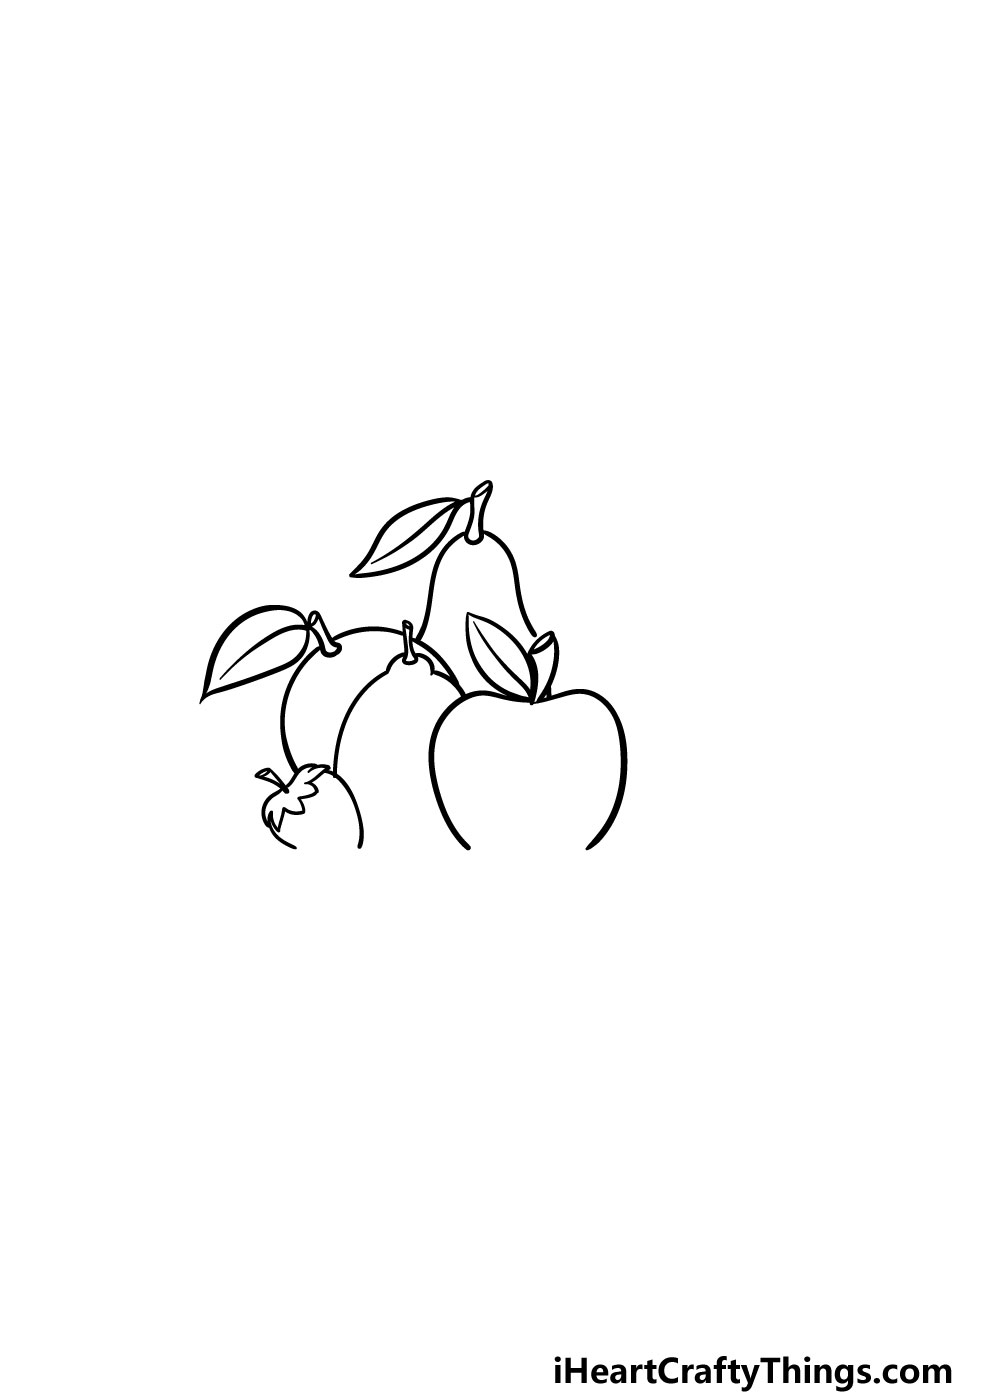 2 95 - Hướng dẫn cách vẽ trái cây hoa quả đơn giản với 7 bước cơ bản